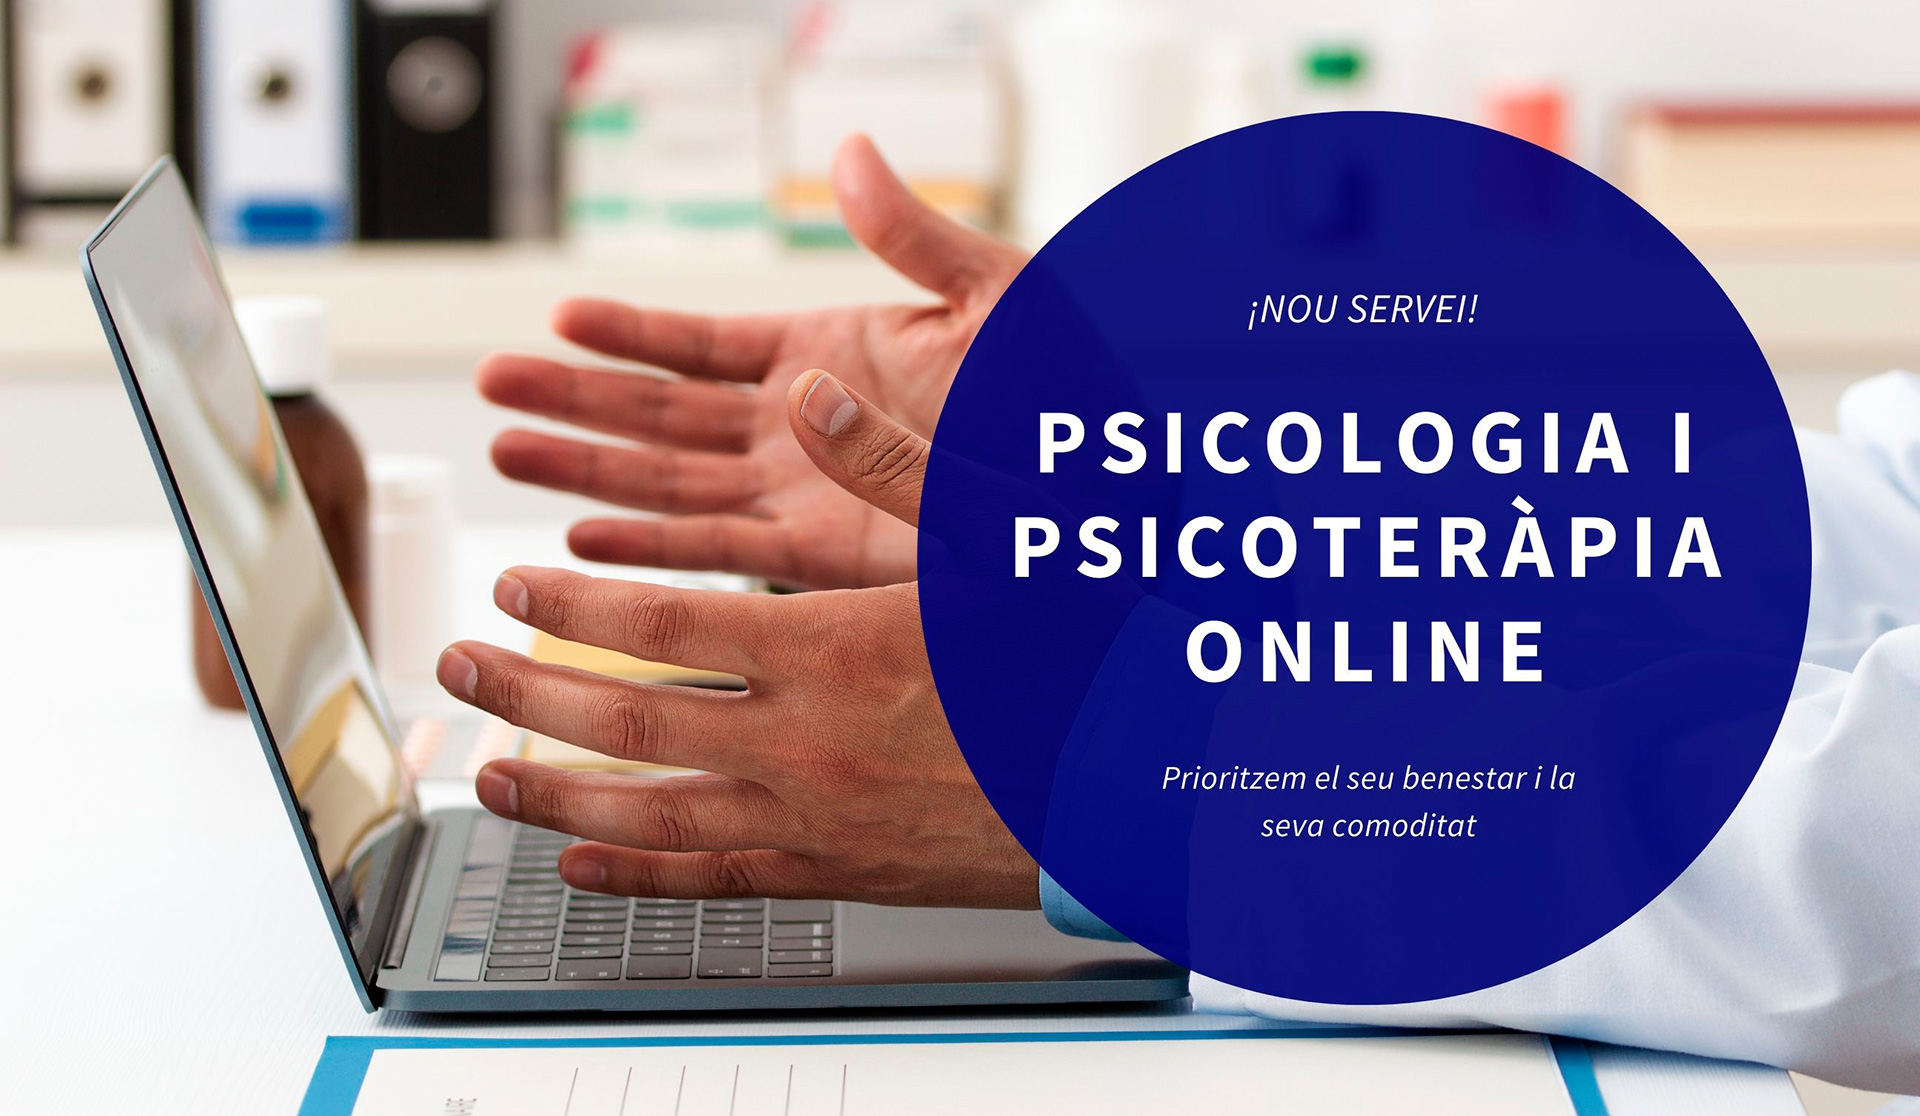 Psicologia i psicoterapia online